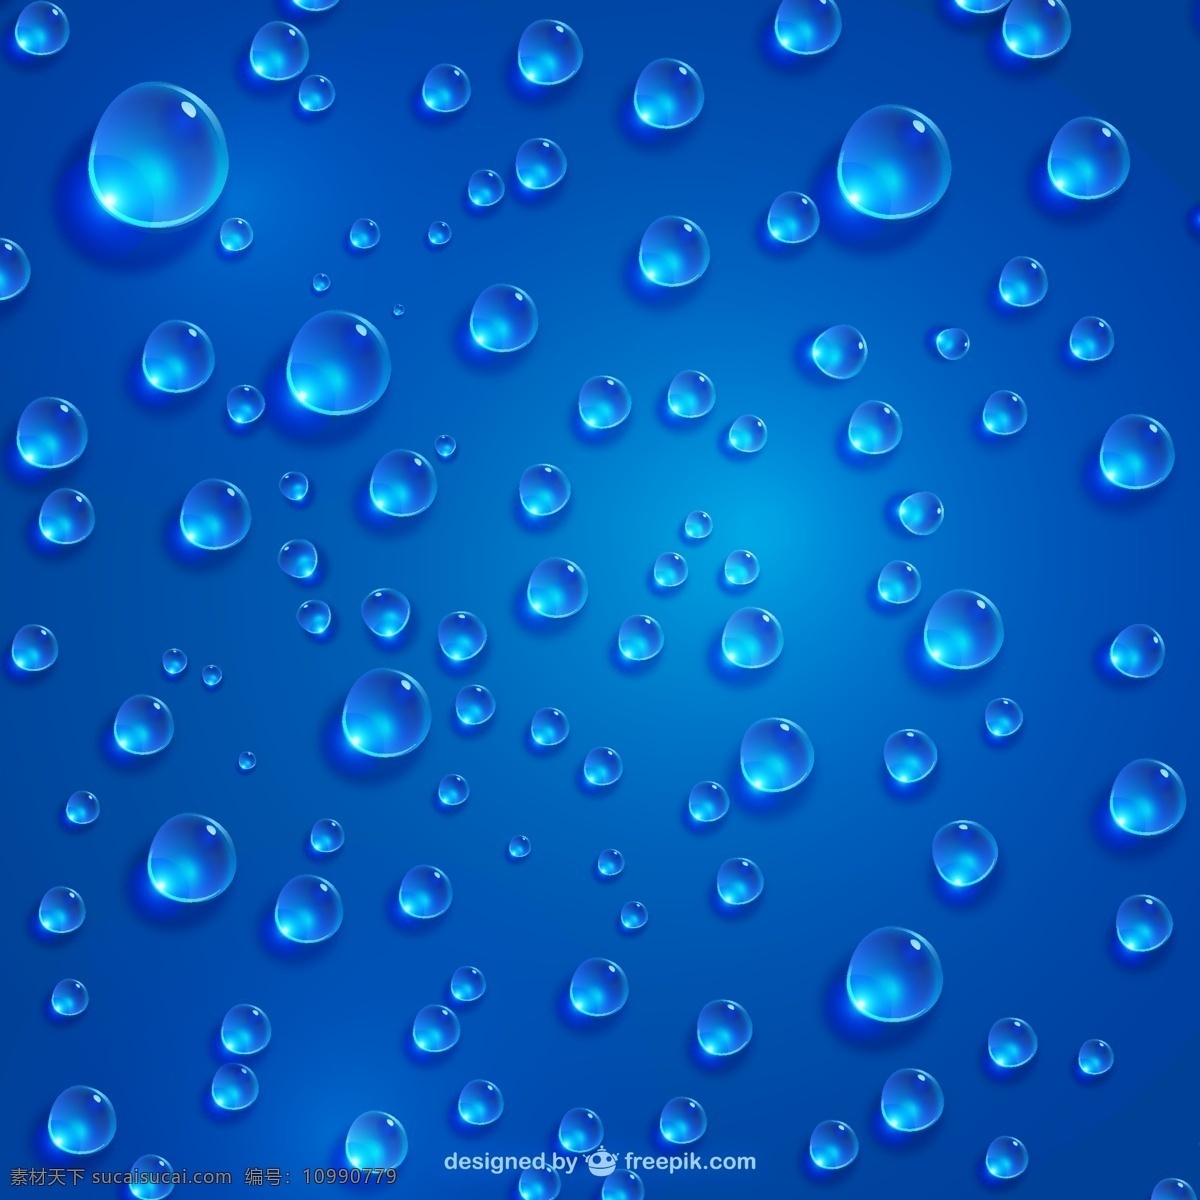 晶莹 水珠 蓝色 背景 矢量图 水滴 透明 雨滴